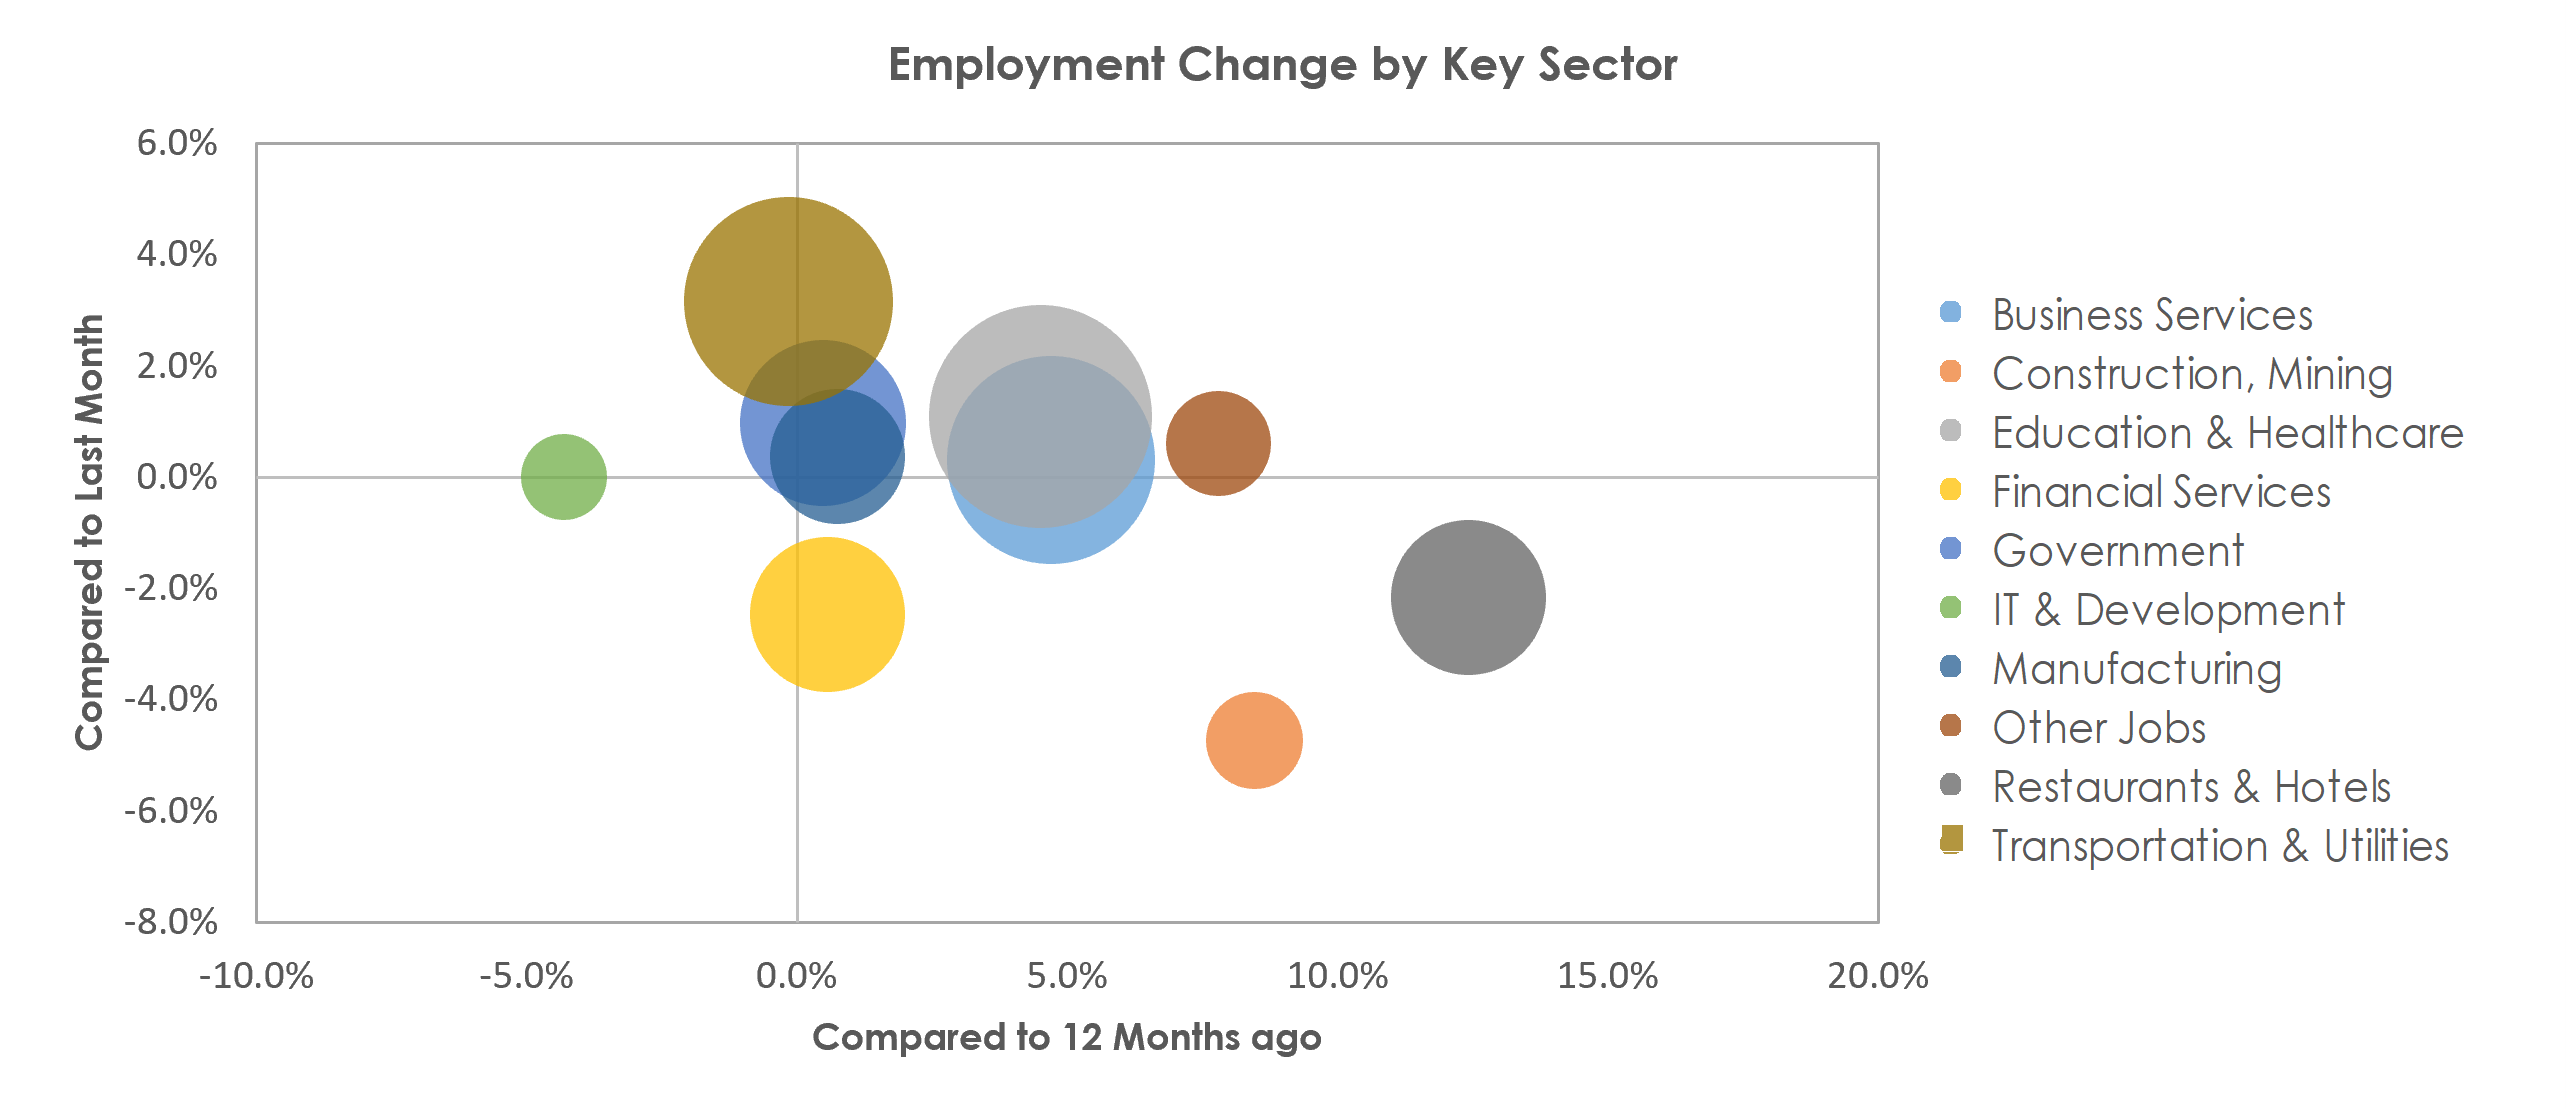 Bridgeport-Stamford-Norwalk, CT Unemployment by Industry November 2021